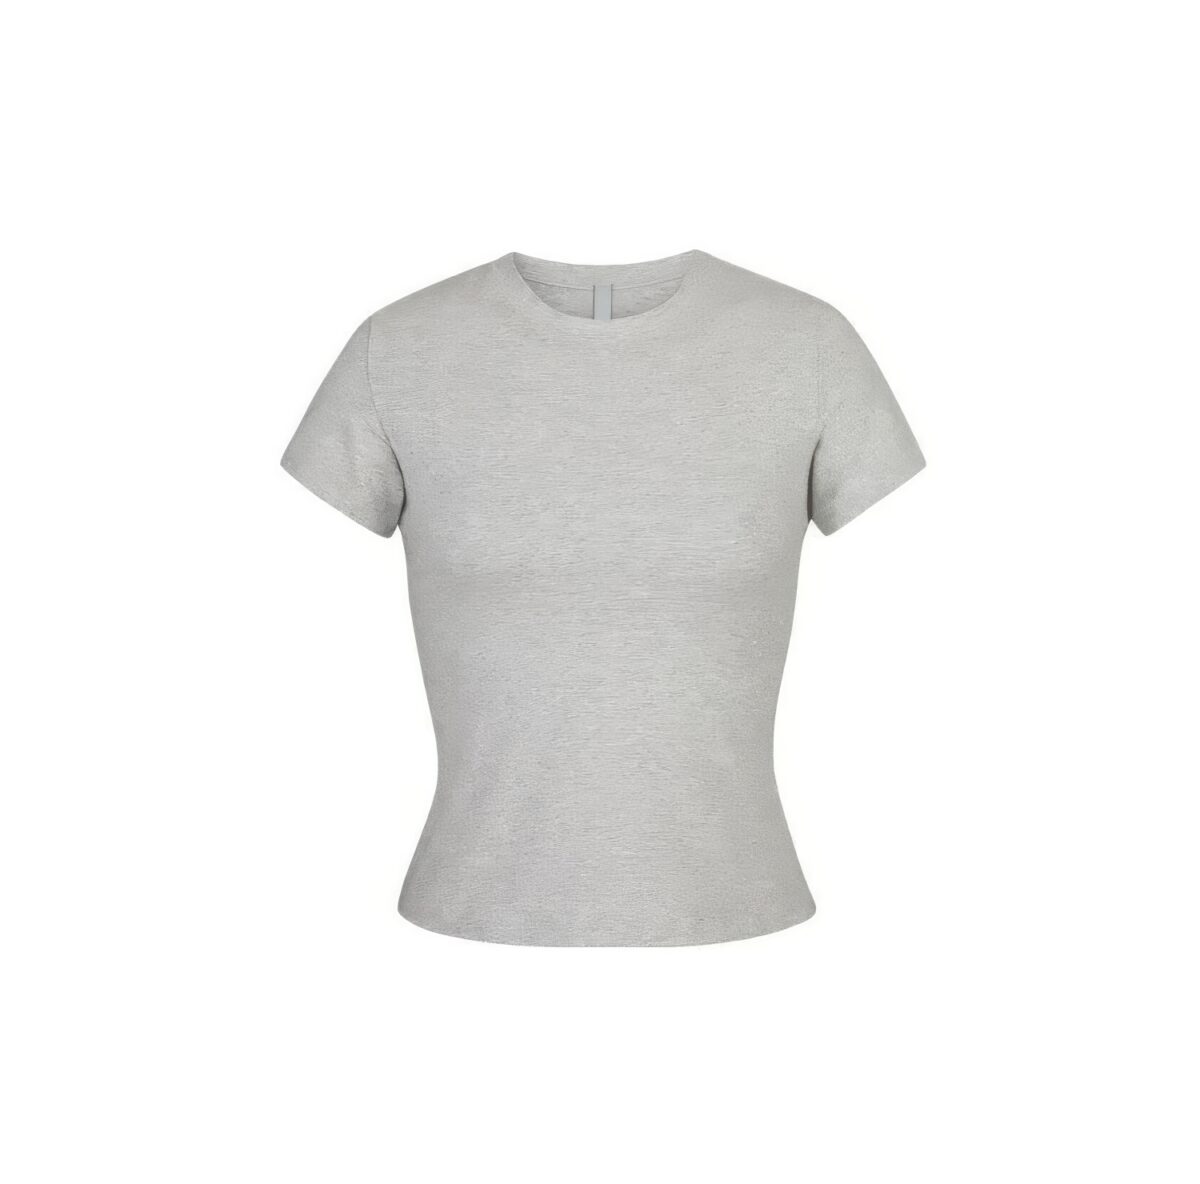 skims-t-shirt-cotton-jersey-grey_ap-tsh-0638-heg